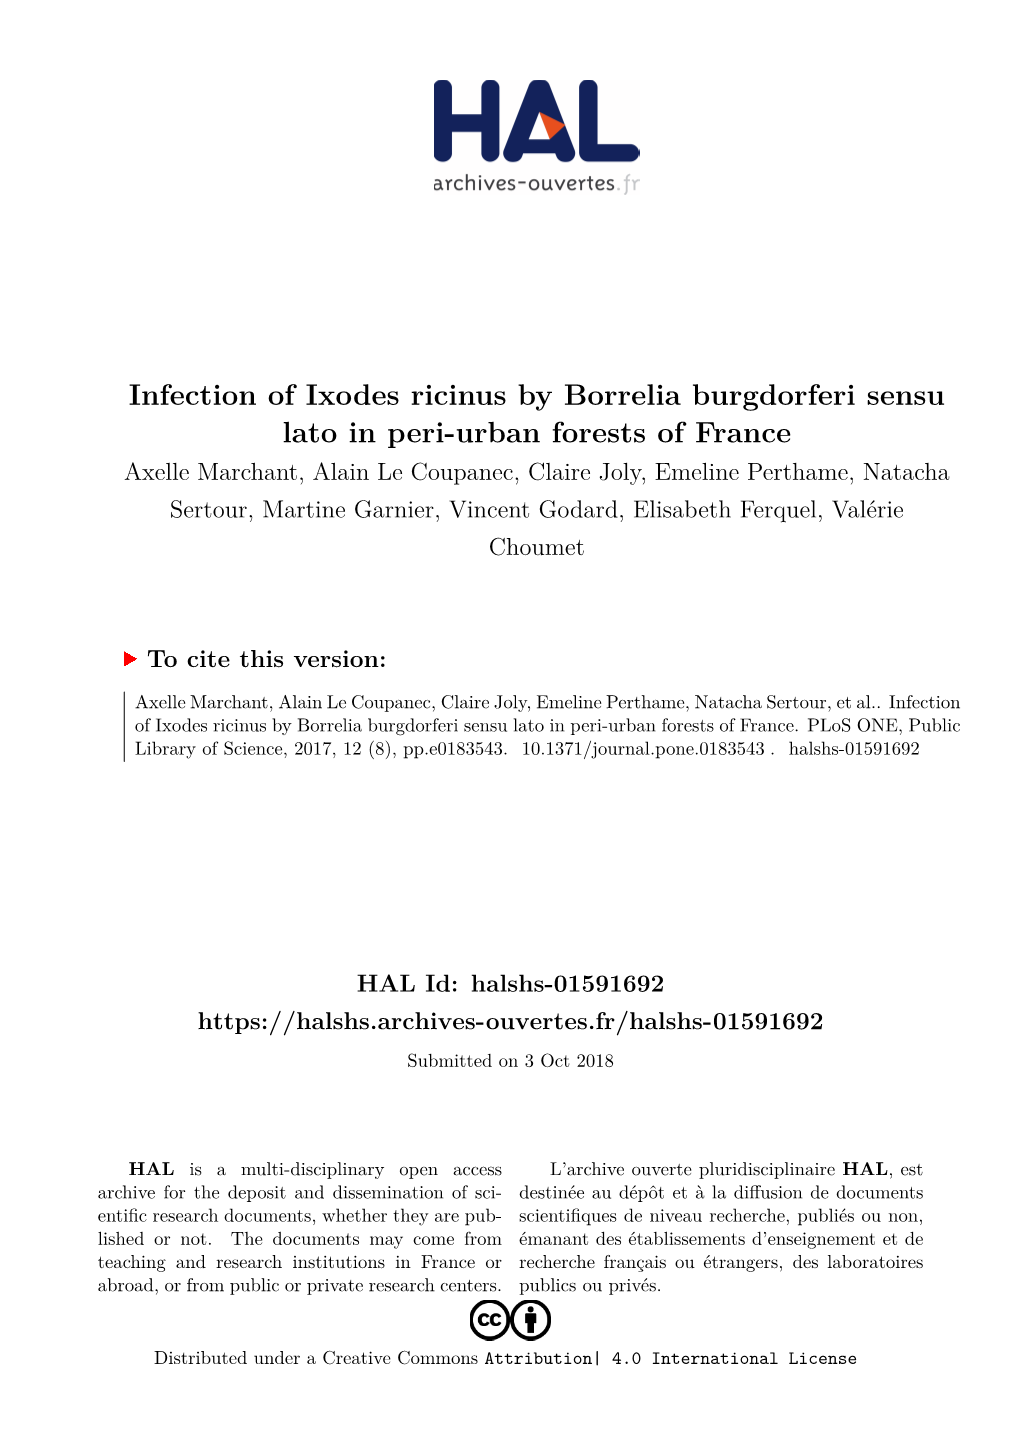 Infection of Ixodes Ricinus by Borrelia Burgdorferi Sensu Lato in Peri-Urban